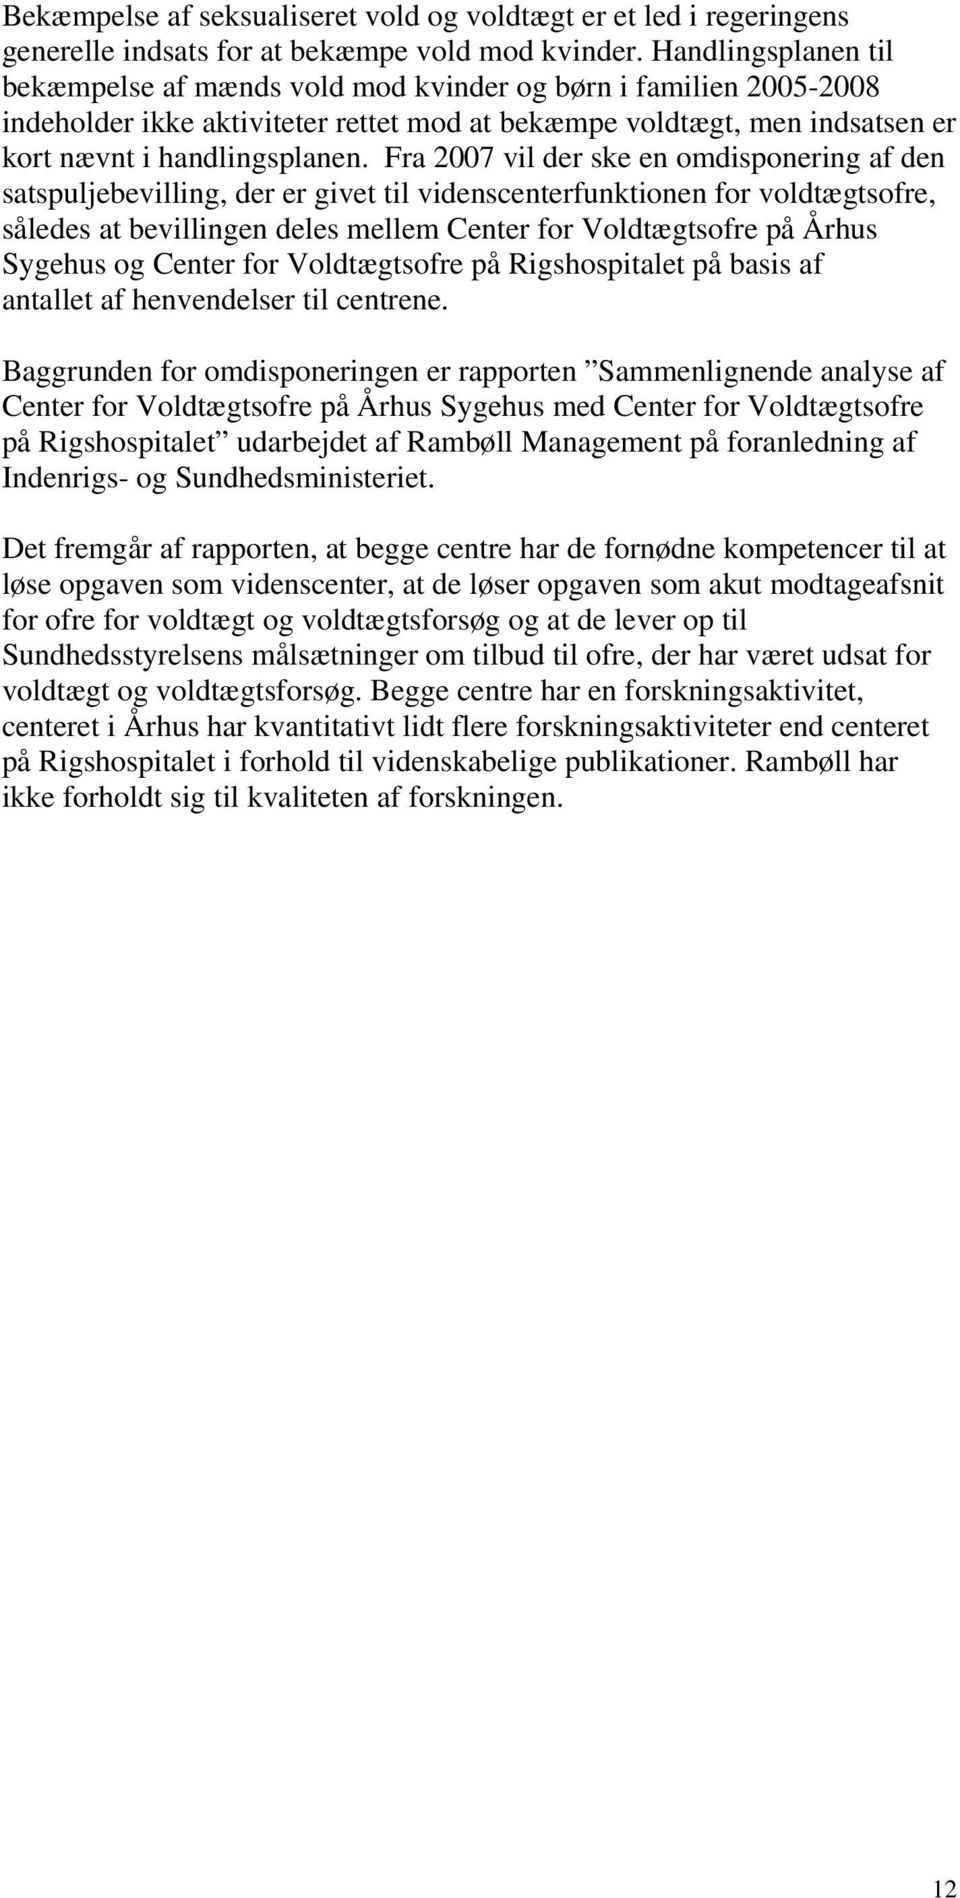 Fra 2007 vil der ske en omdisponering af den satspuljebevilling, der er givet til videnscenterfunktionen for voldtægtsofre, således at bevillingen deles mellem Center for Voldtægtsofre på Århus